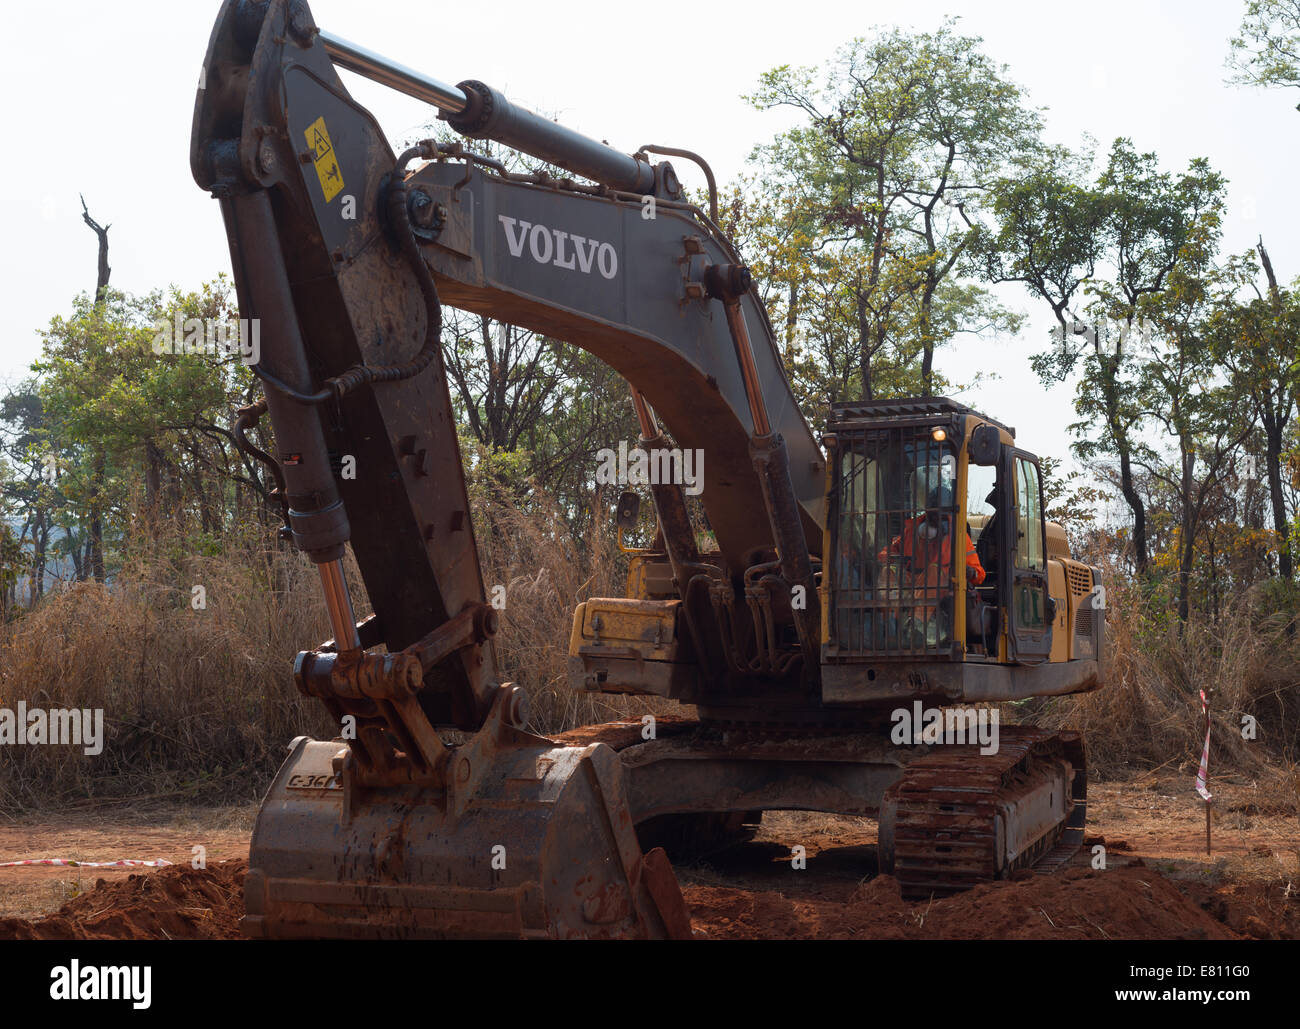 Un affittato 30 ton escavatore Volvo scava un buco come parte di un progetto di costruzione di una grande miniera a cielo aperto. Foto Stock